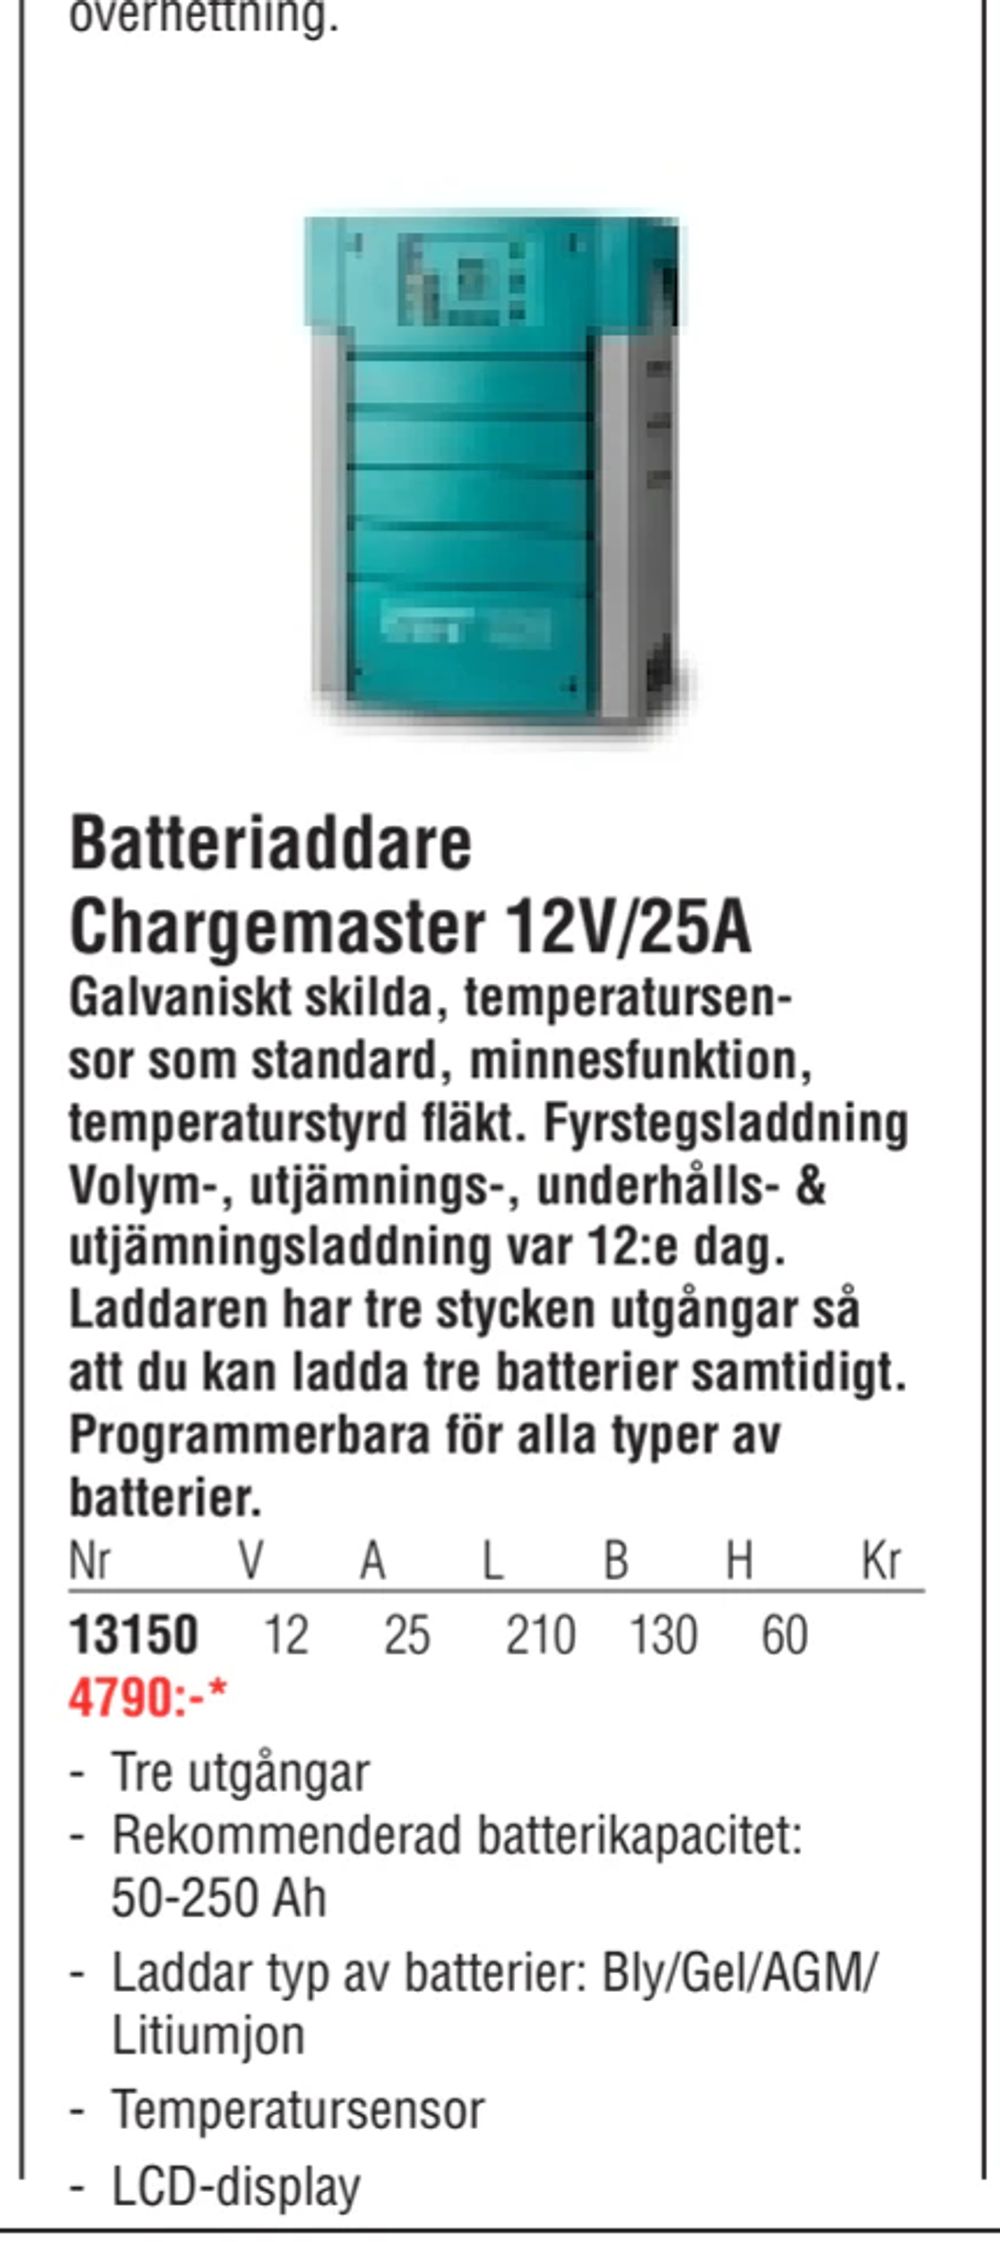 Erbjudanden på Batteriaddare Chargemaster 12V/25A från Erlandsons Brygga för 4 790 kr